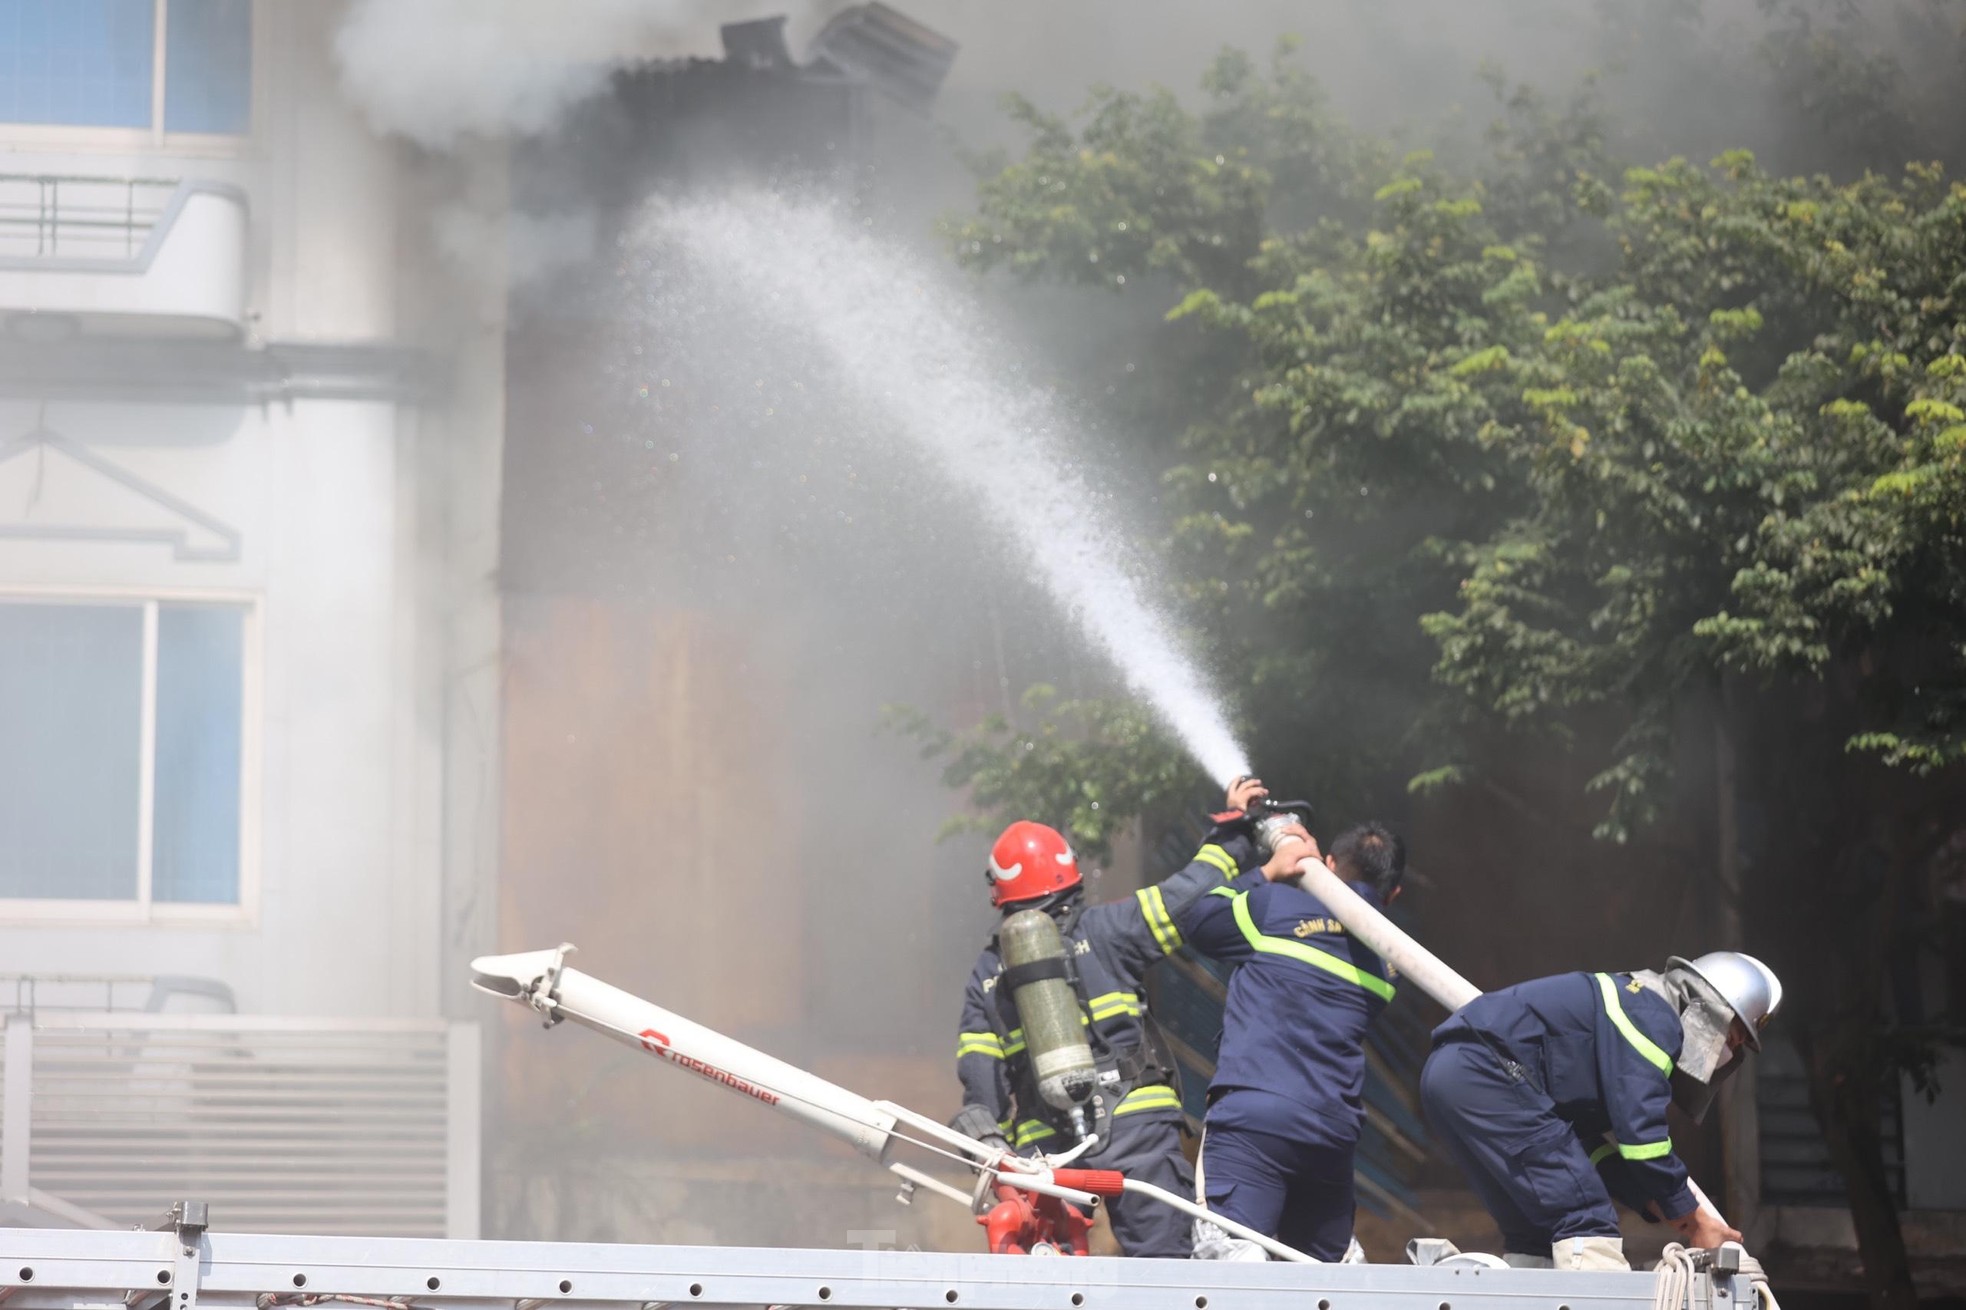 Đang cháy lớn trên phố Hà Nội, khói bốc nghi ngút, người dân ôm tài sản bỏ chạy - Ảnh 7.